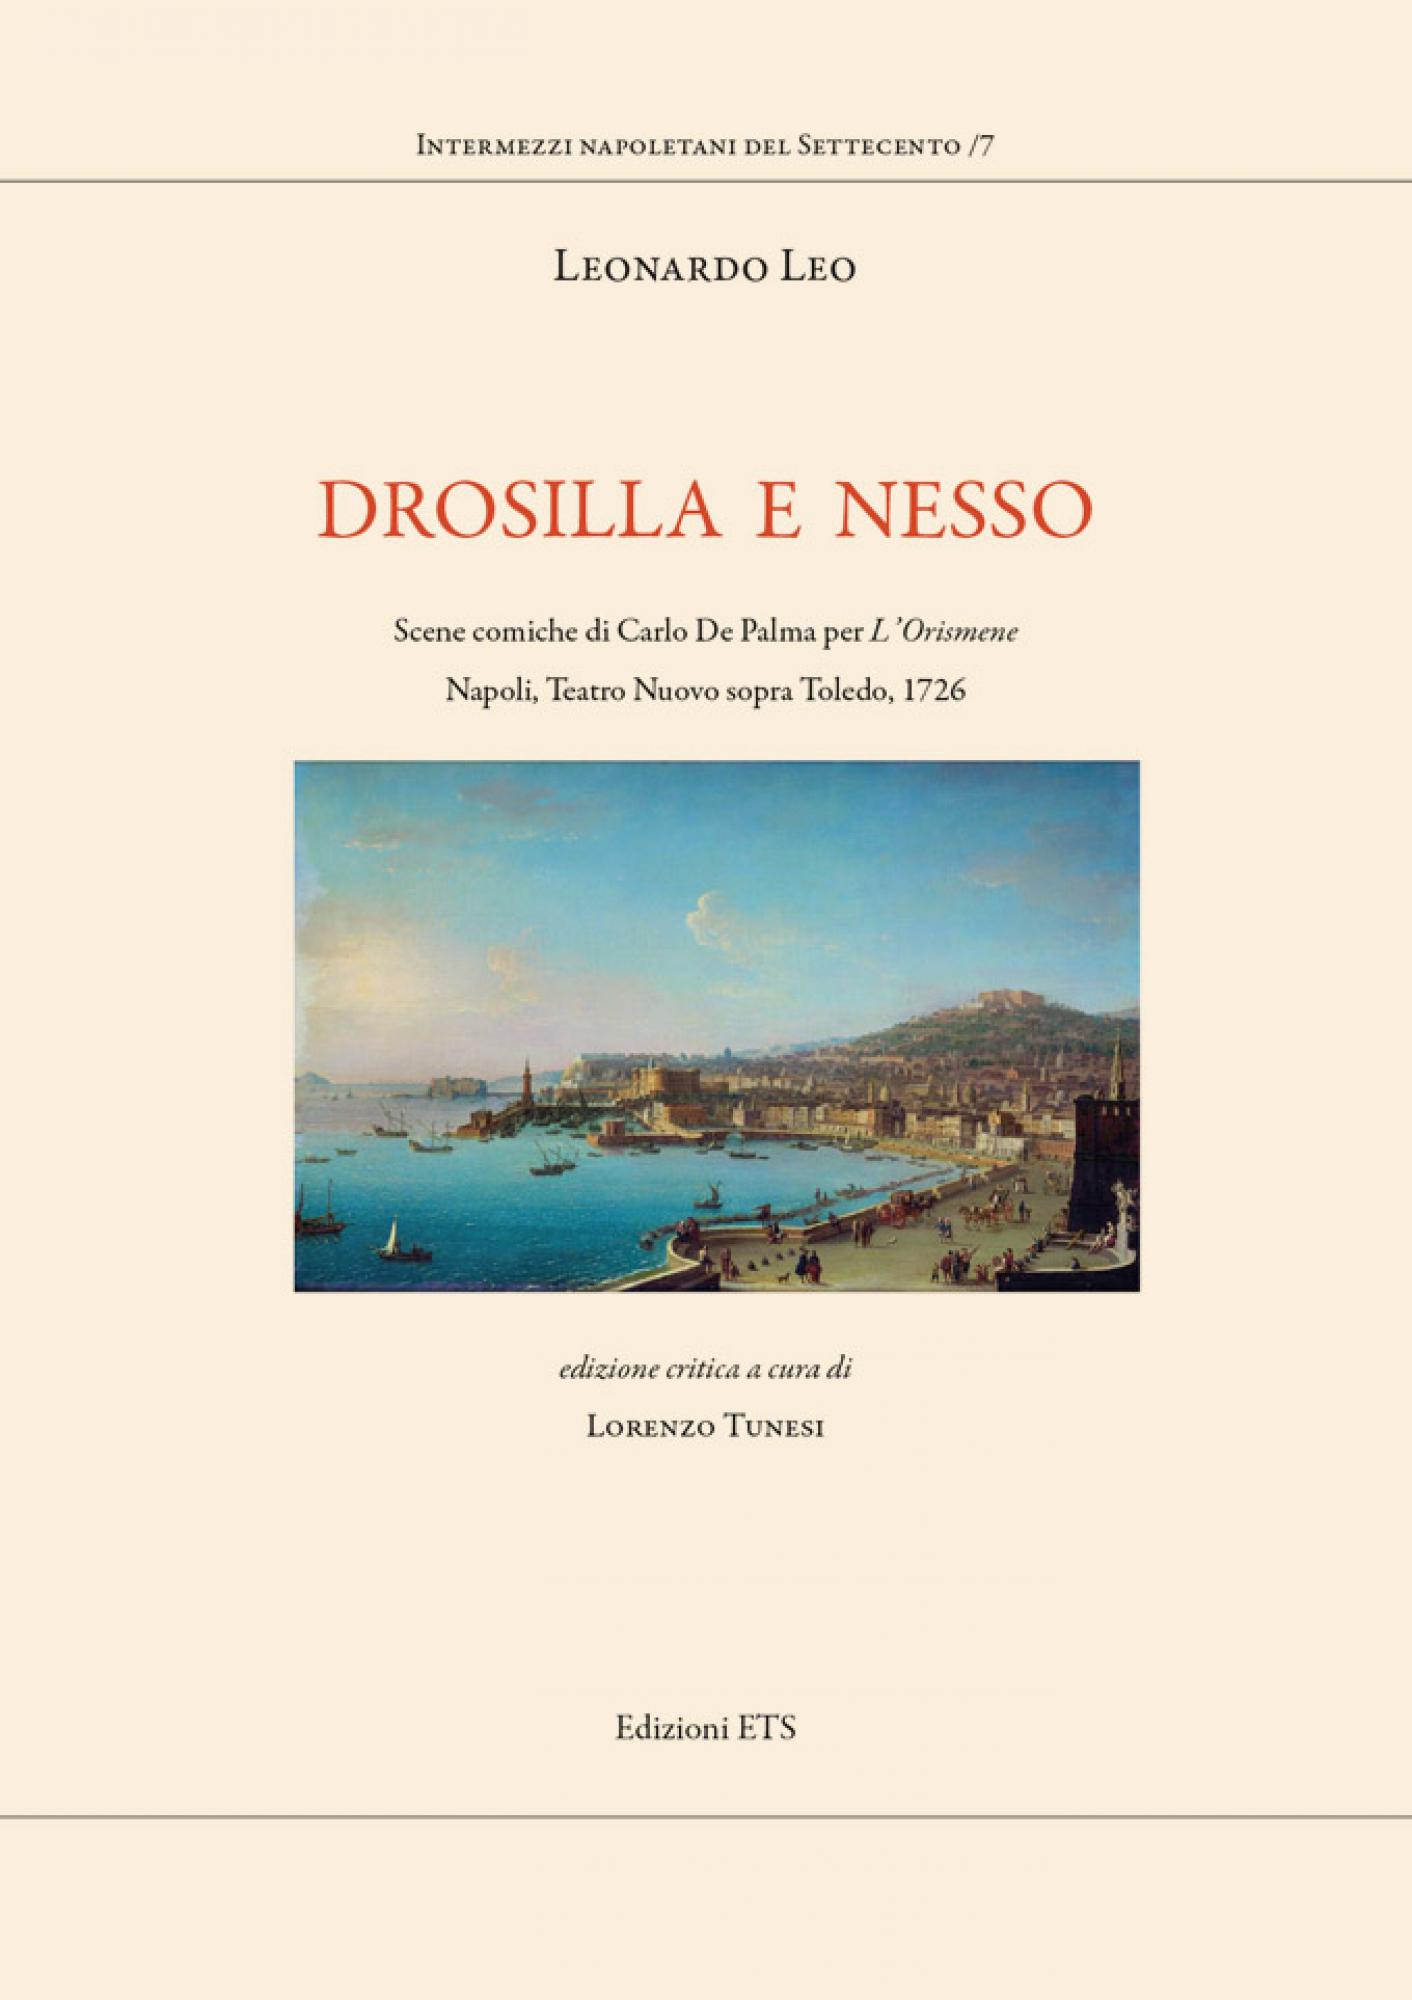 Drosilla e Nesso.Scene comiche di Carlo De Palma per L'Orismene. Napoli, Teatro Nuovo sopra Toledo, 1726